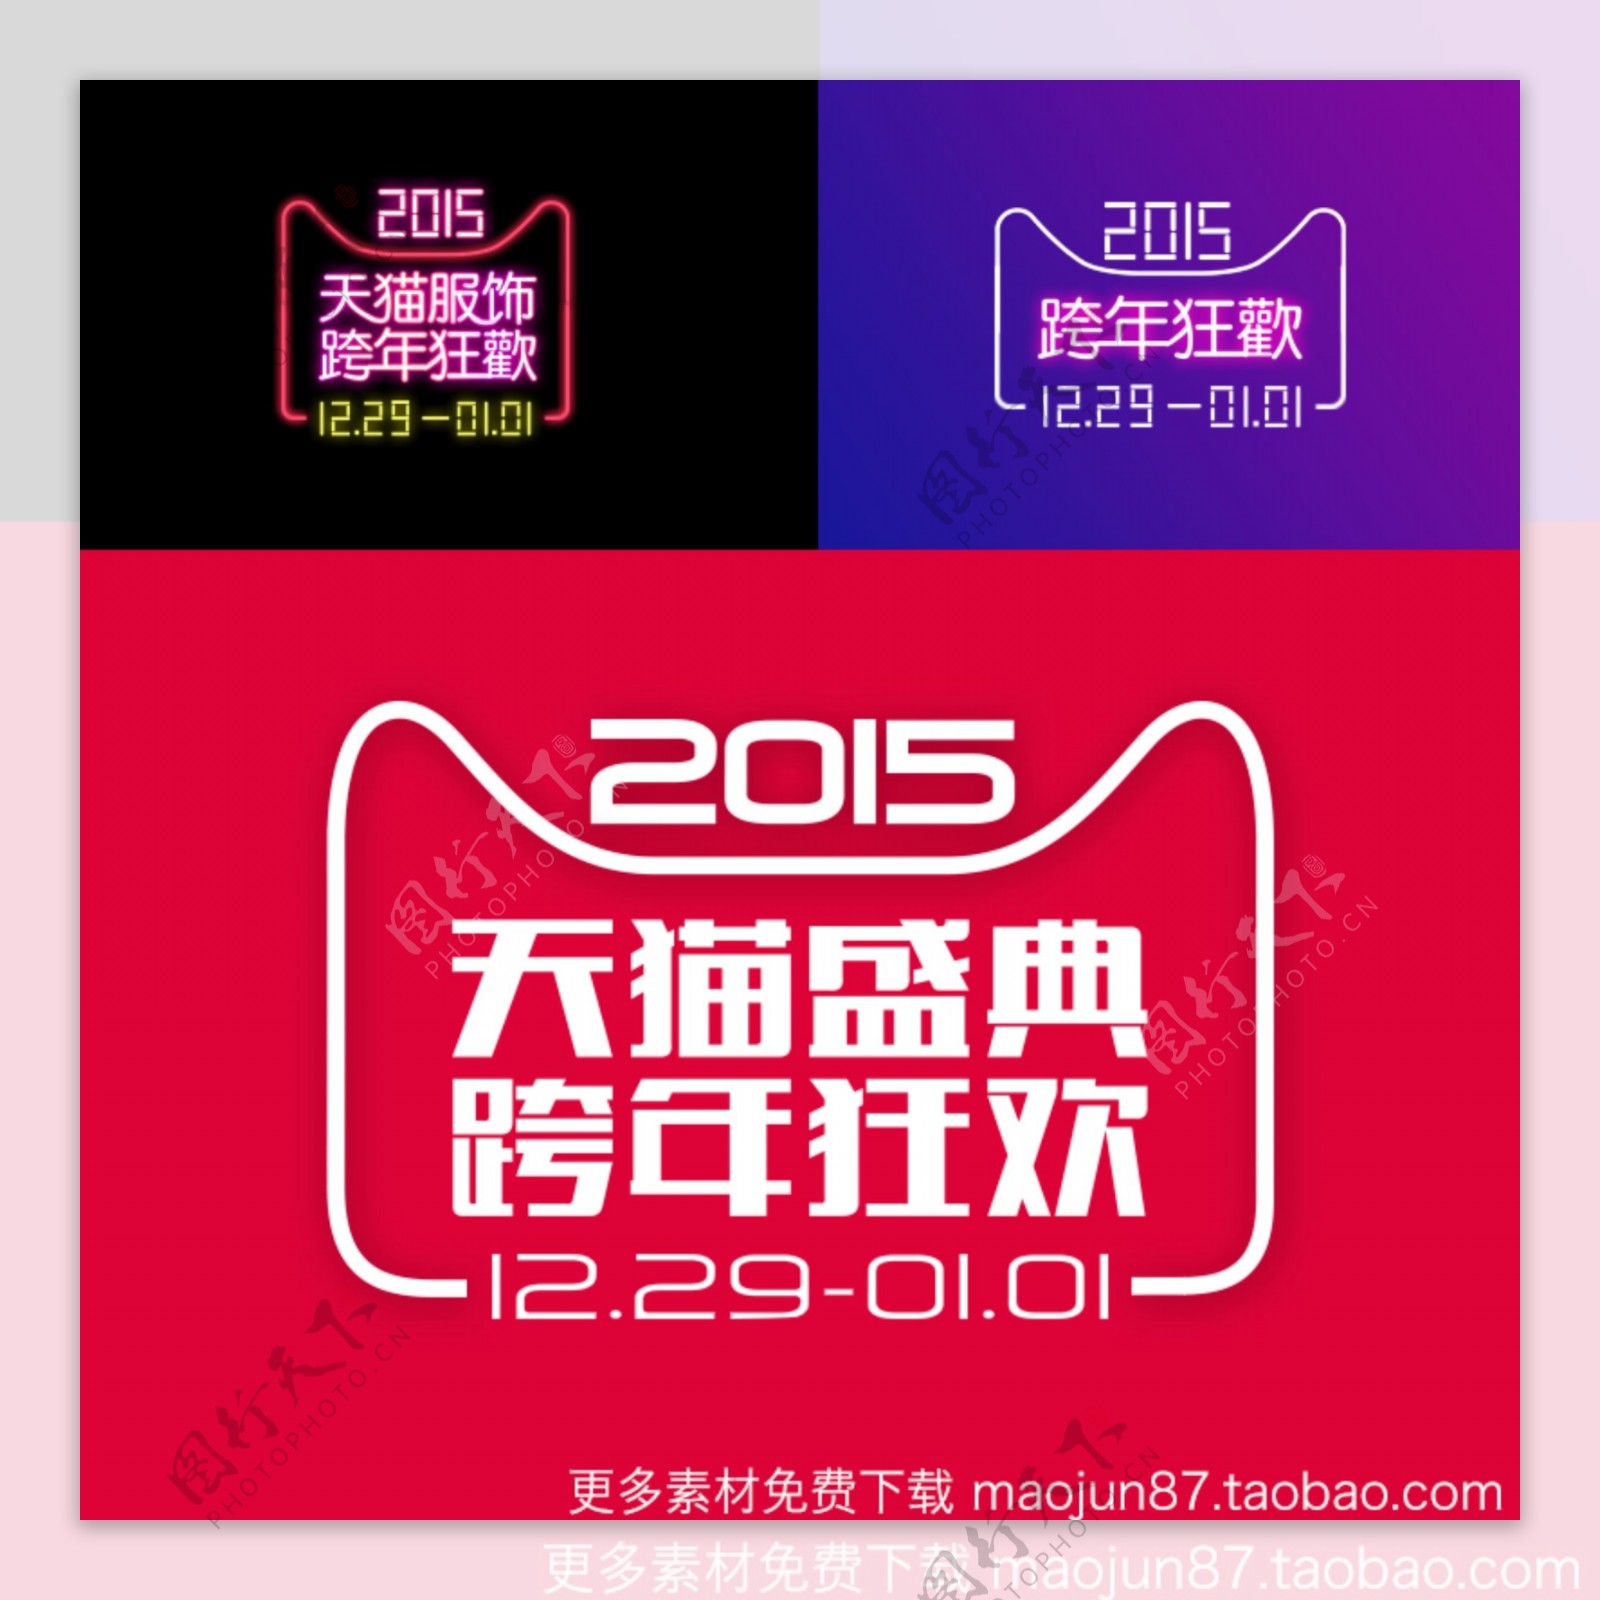 2015跨年狂欢夜天猫官方LOGO跨年90sheji.com